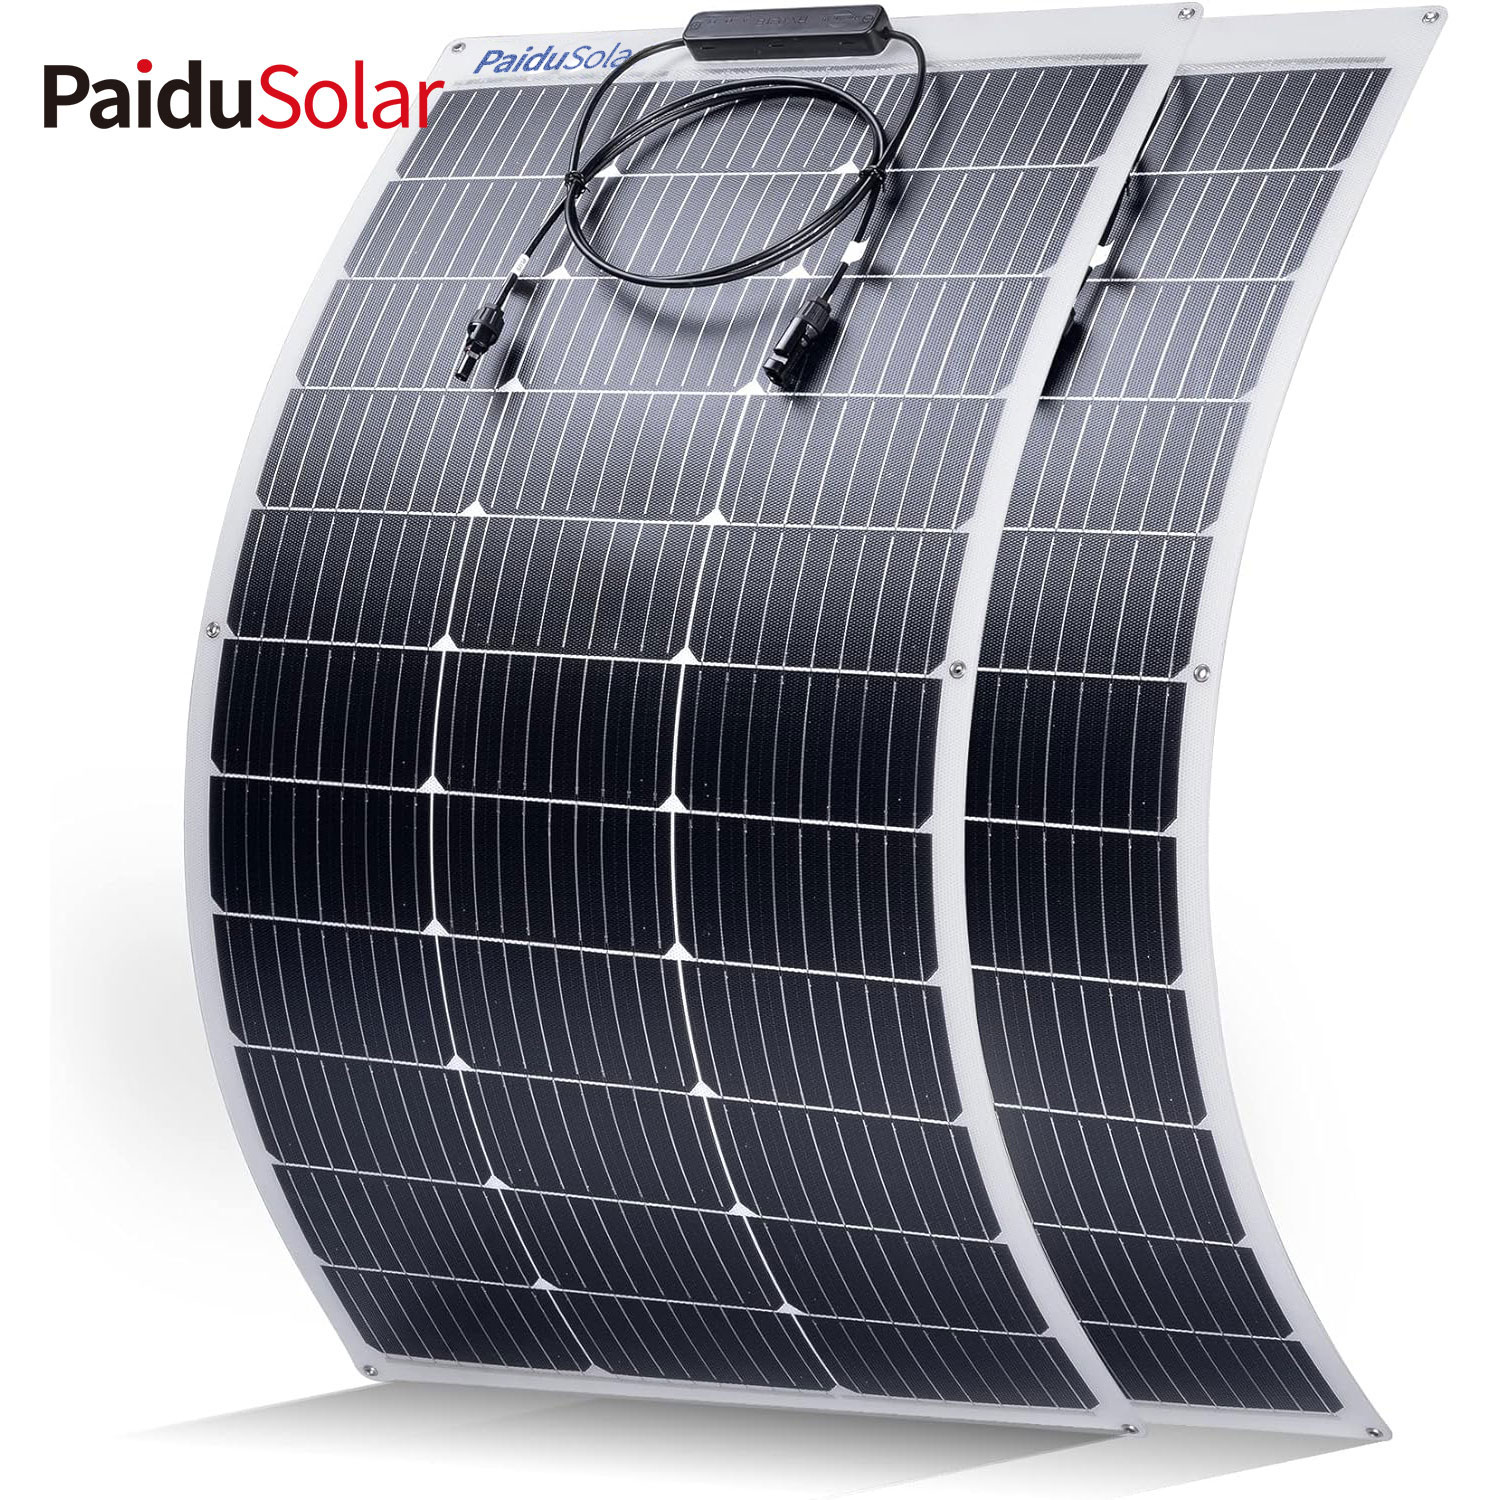 PaiduSolar 100W 12V Volt Półelastyczny panel słoneczny do morskiego przyczepy RV Boat Cabin Car